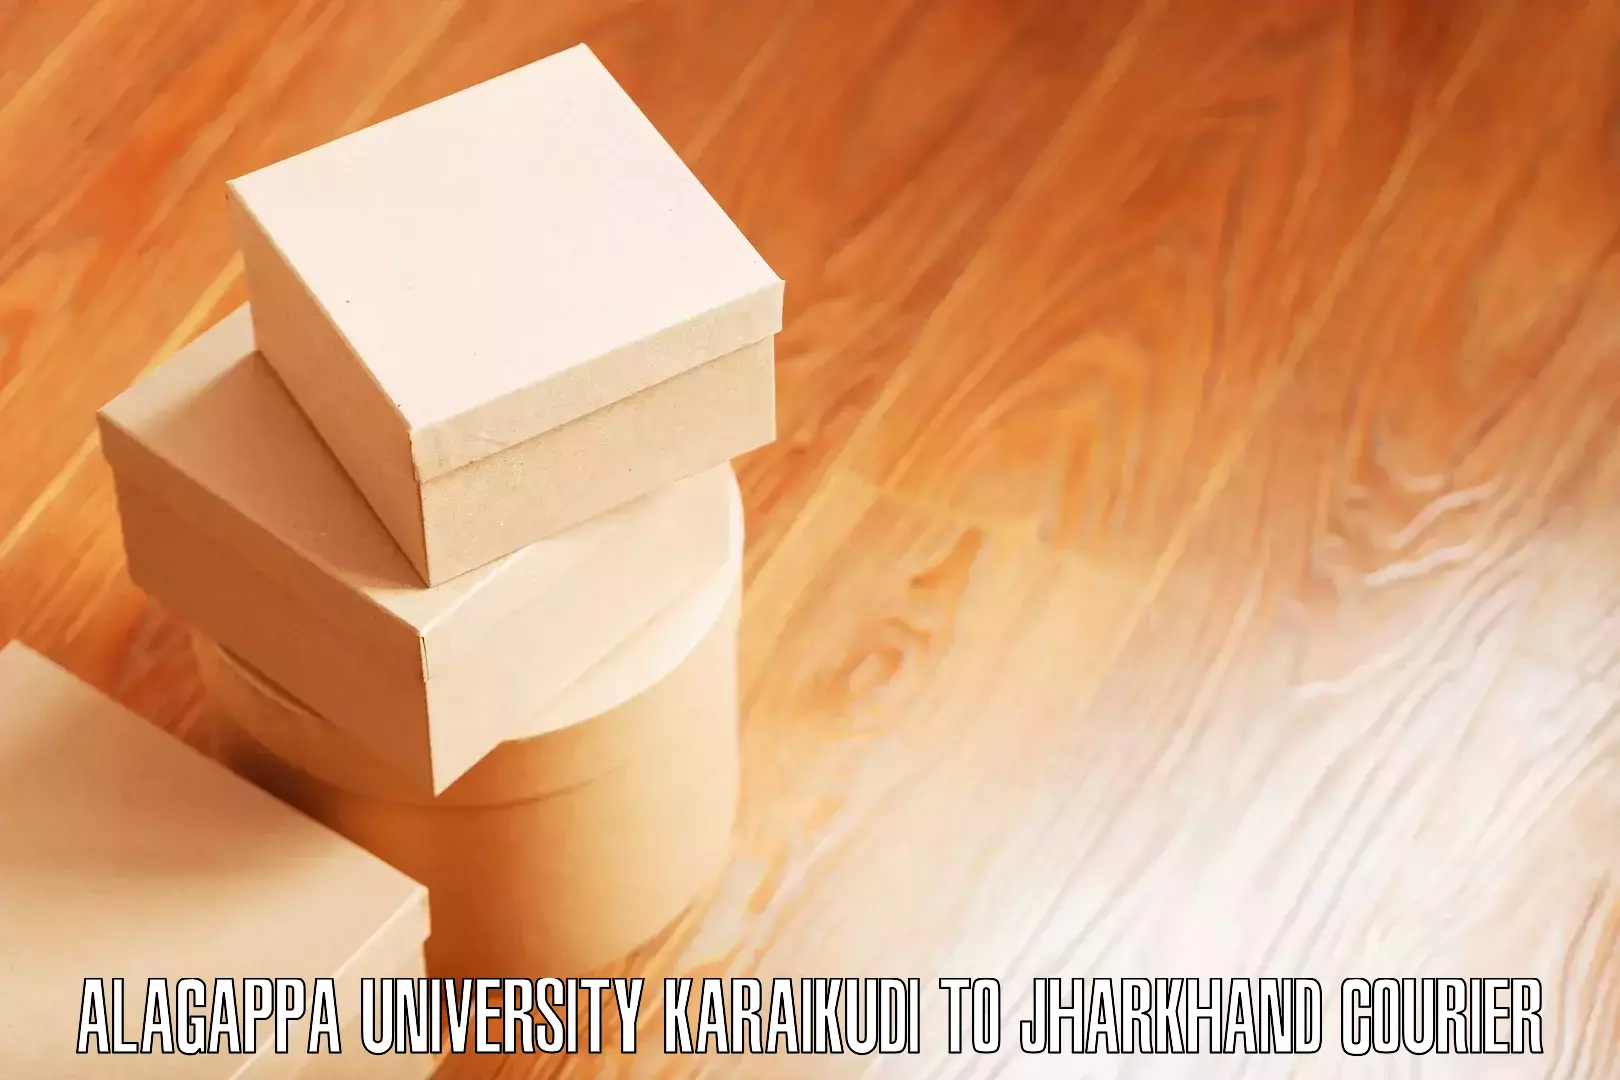 Skilled furniture movers Alagappa University Karaikudi to Chandankiyari